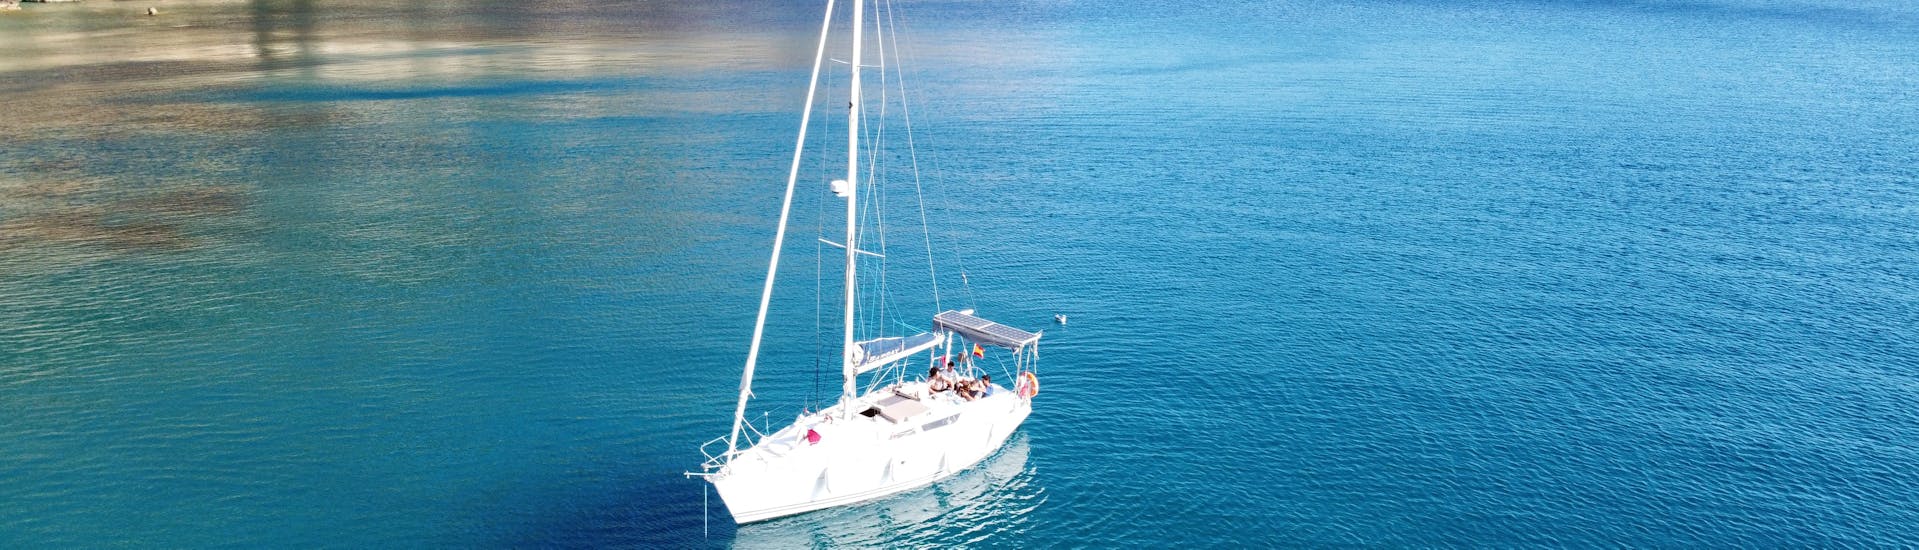 Une excursion en bateau à travers la mer Méditerranée sur la côte sud de Majorque avec une excursion en bateau de Vayu Charters.